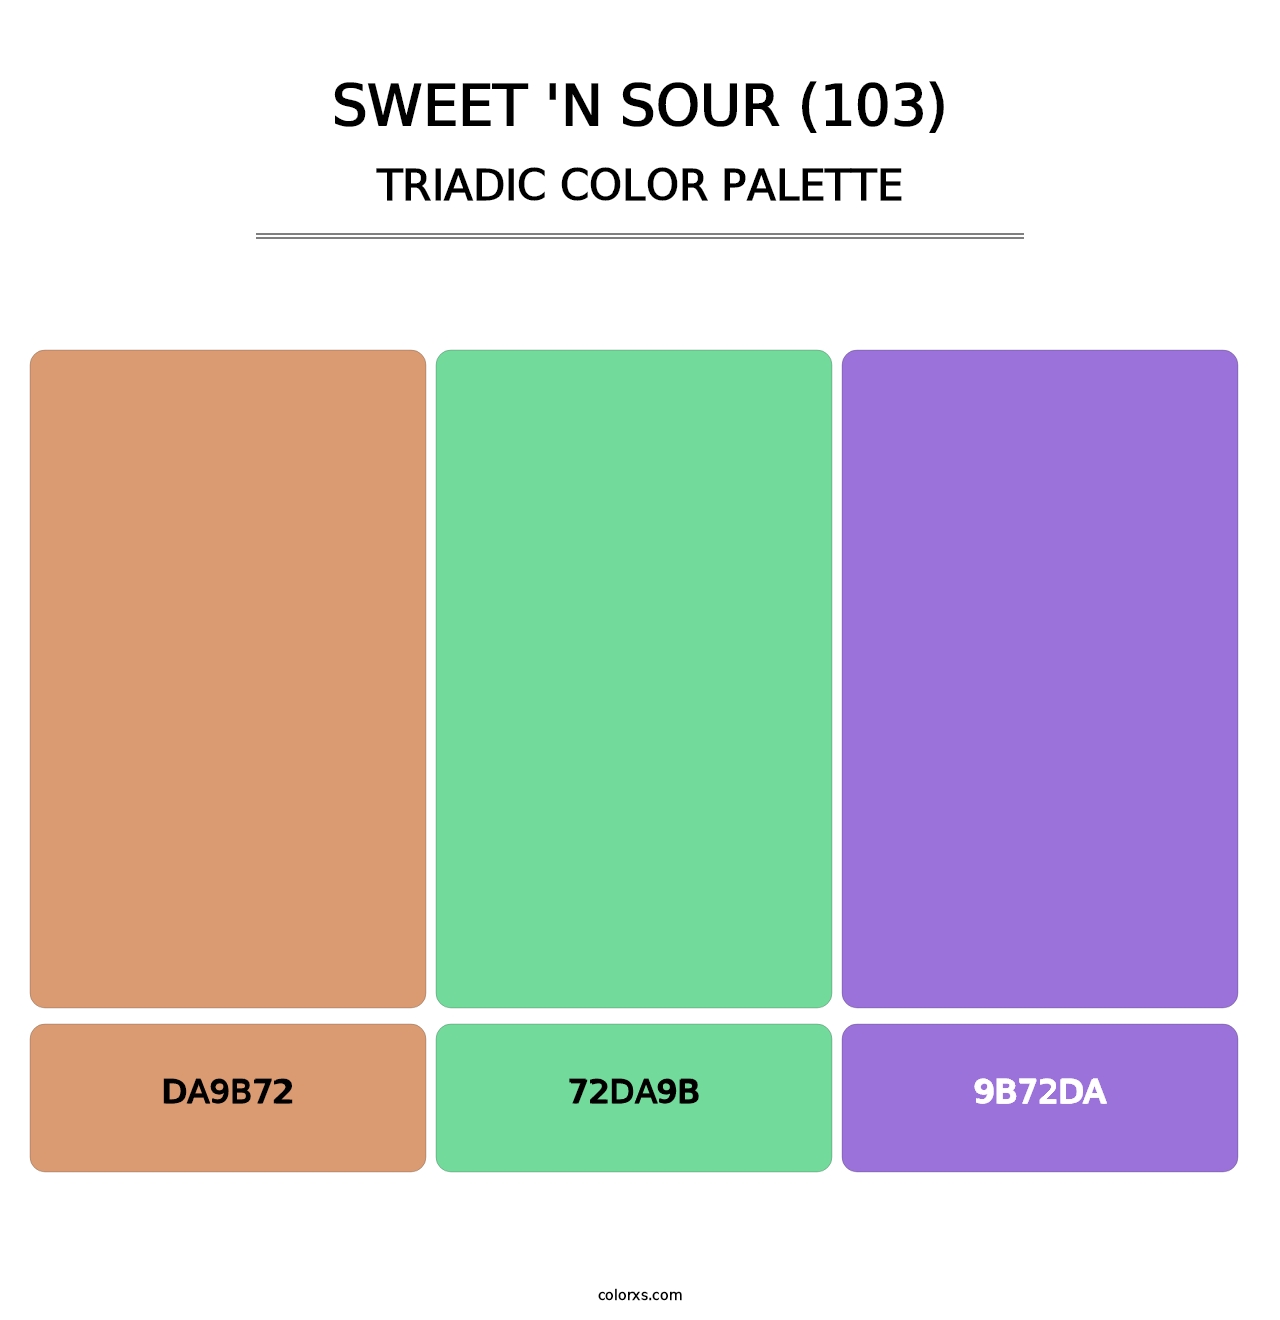 Sweet 'n Sour (103) - Triadic Color Palette